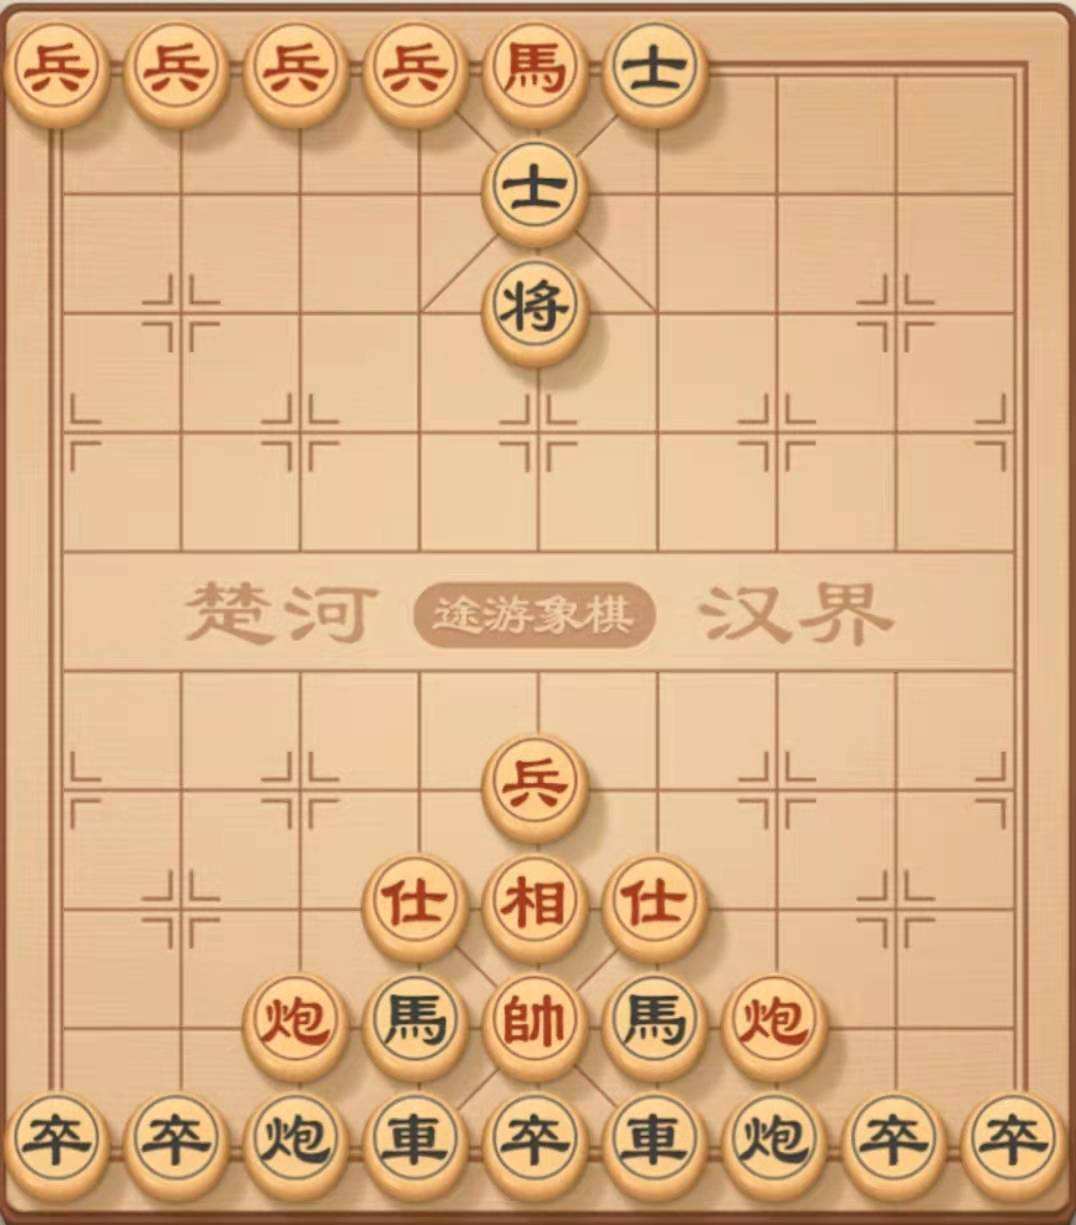 中国象棋实战经验之细节技巧决定成败